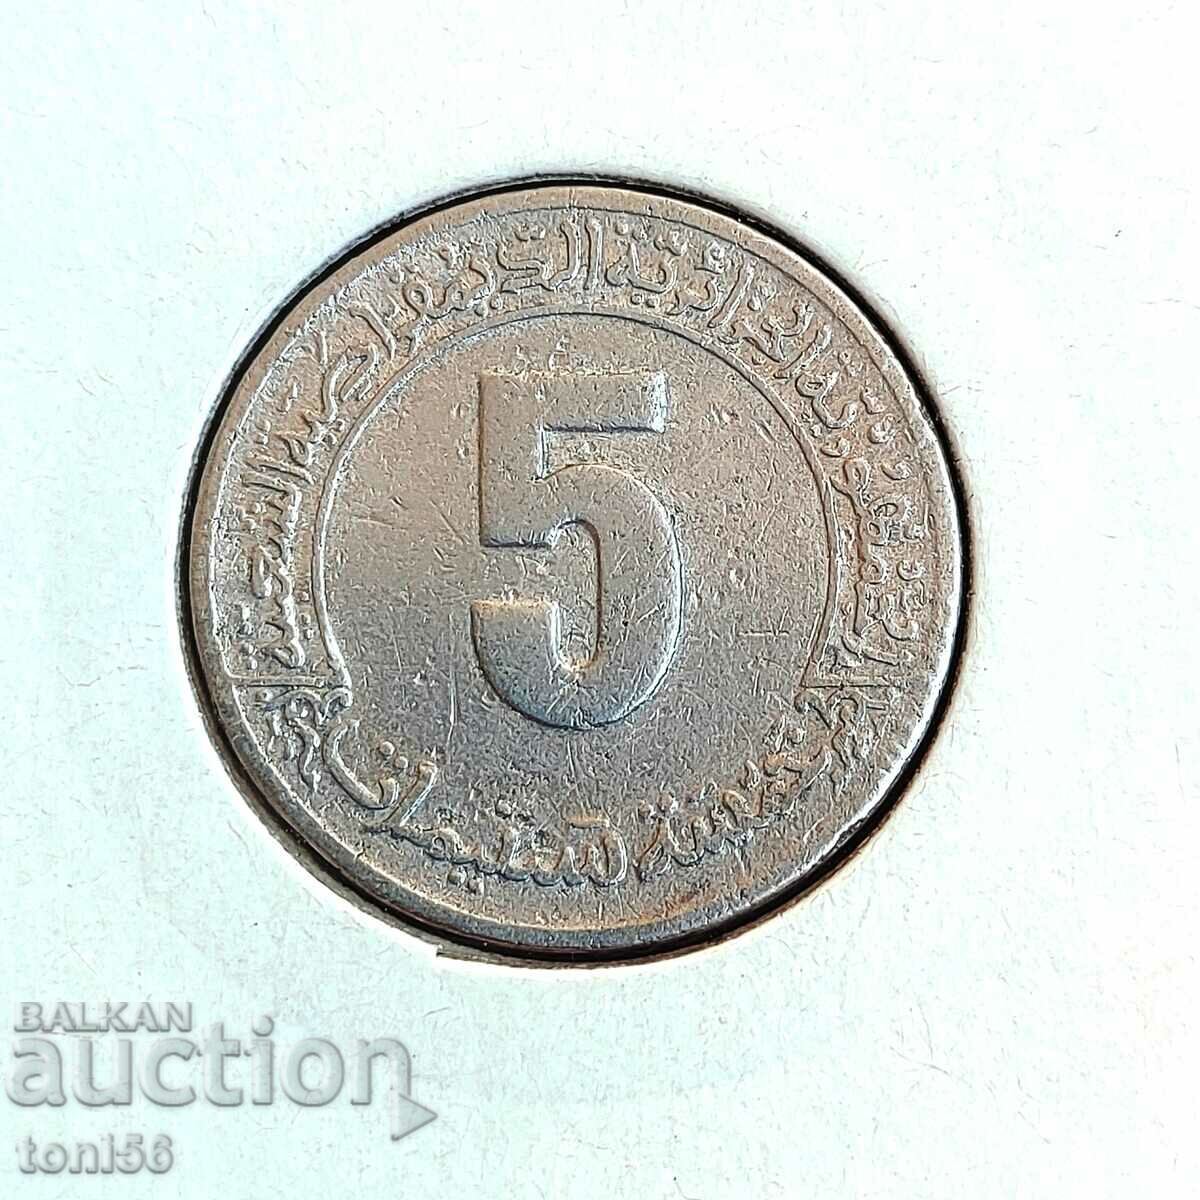 Algeria 5 centimes 1980 FAO